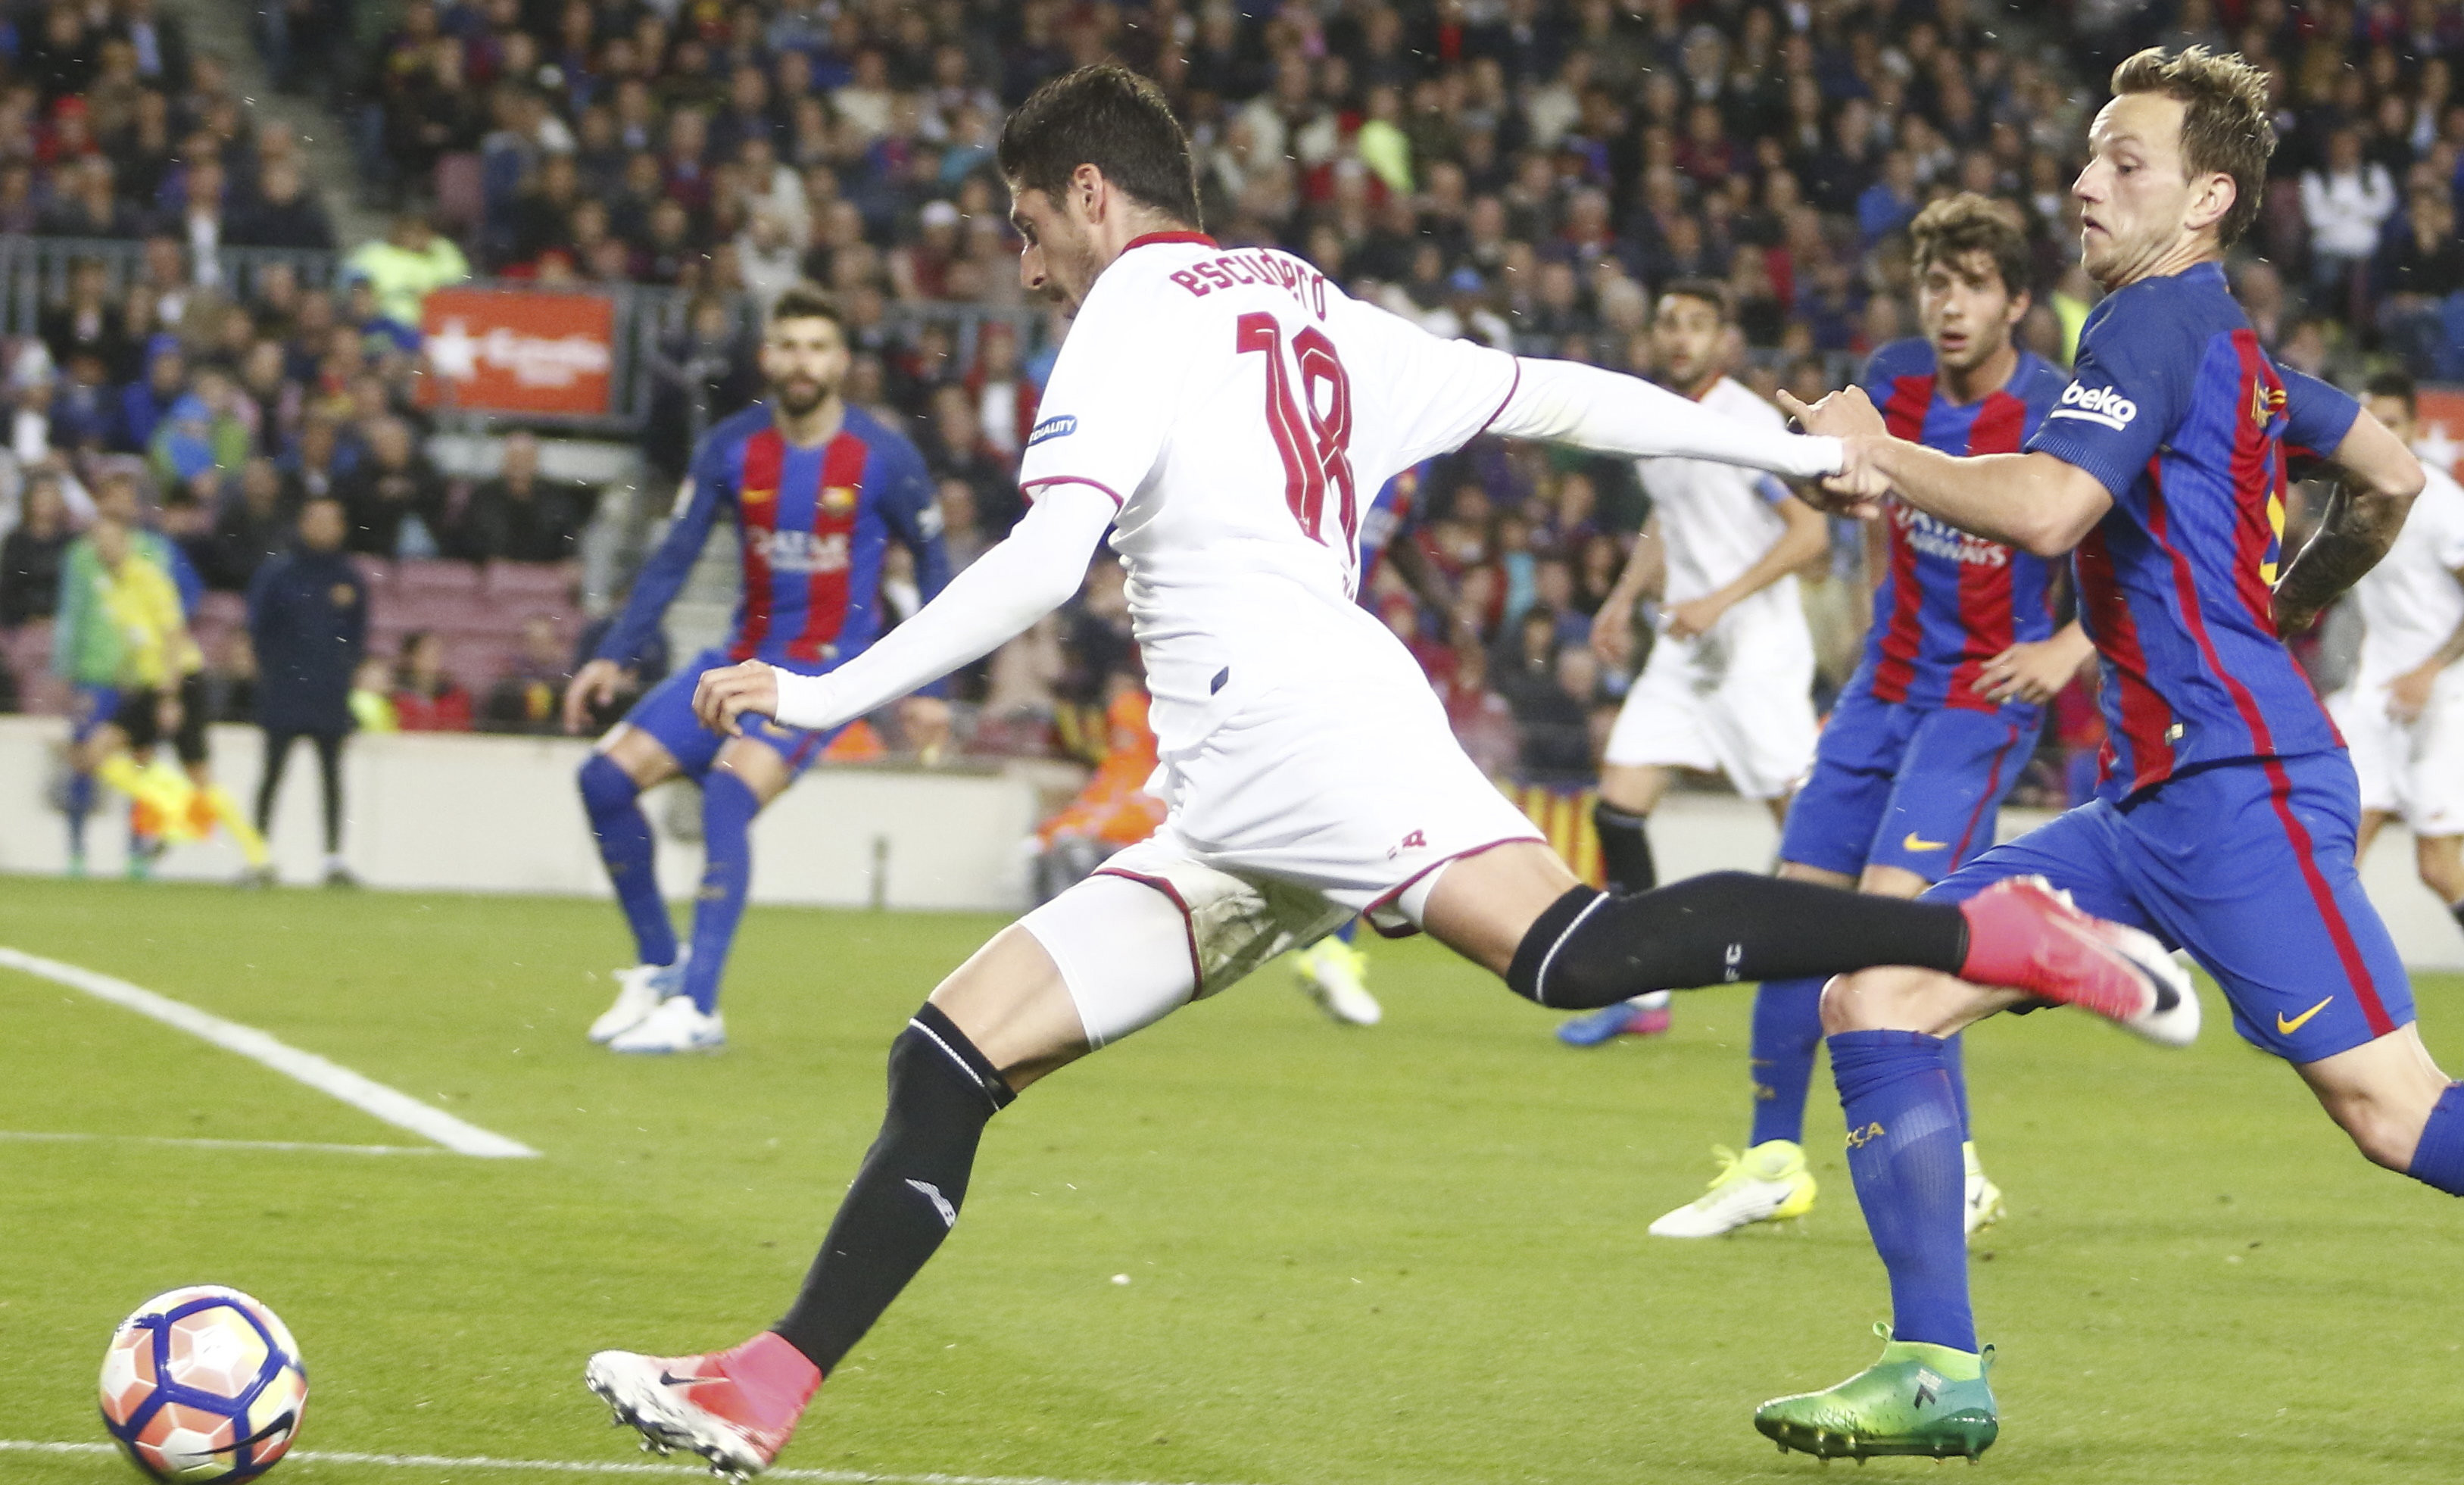 Escudero of Sevilla FC in a clash with FC Barcelona